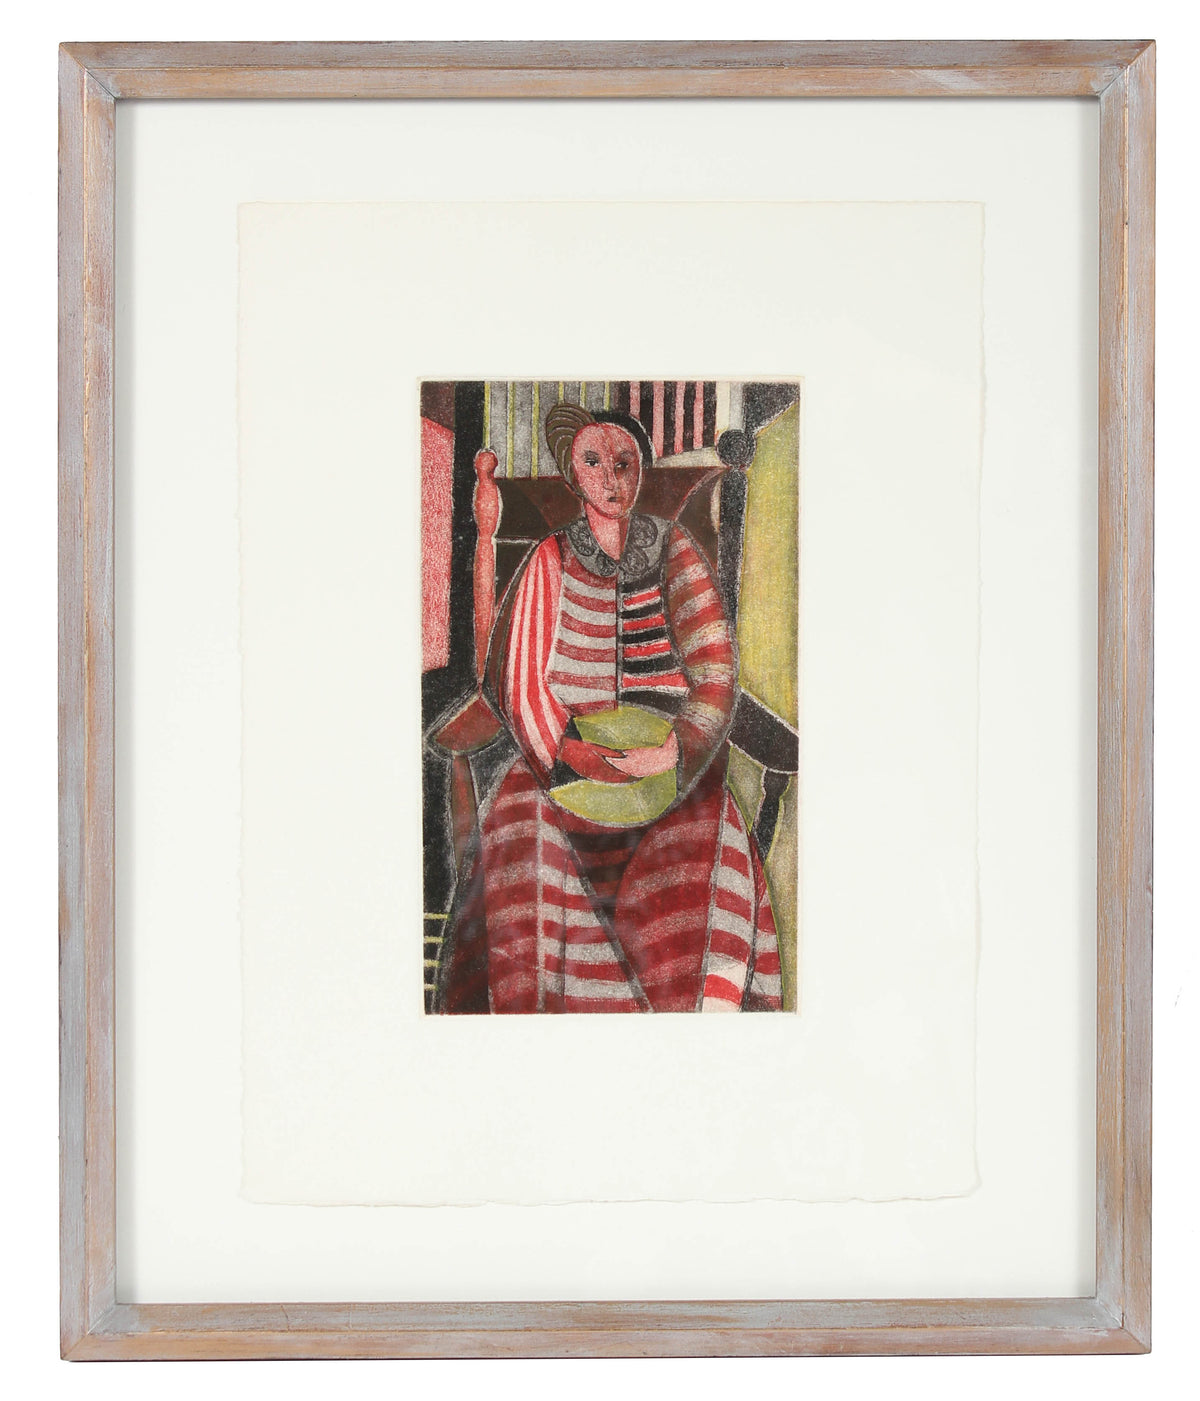 &lt;i&gt;Woman in Striped Dress&lt;/i&gt;&lt;br&gt;1949 Etching&lt;br&gt;&lt;br&gt;#83510